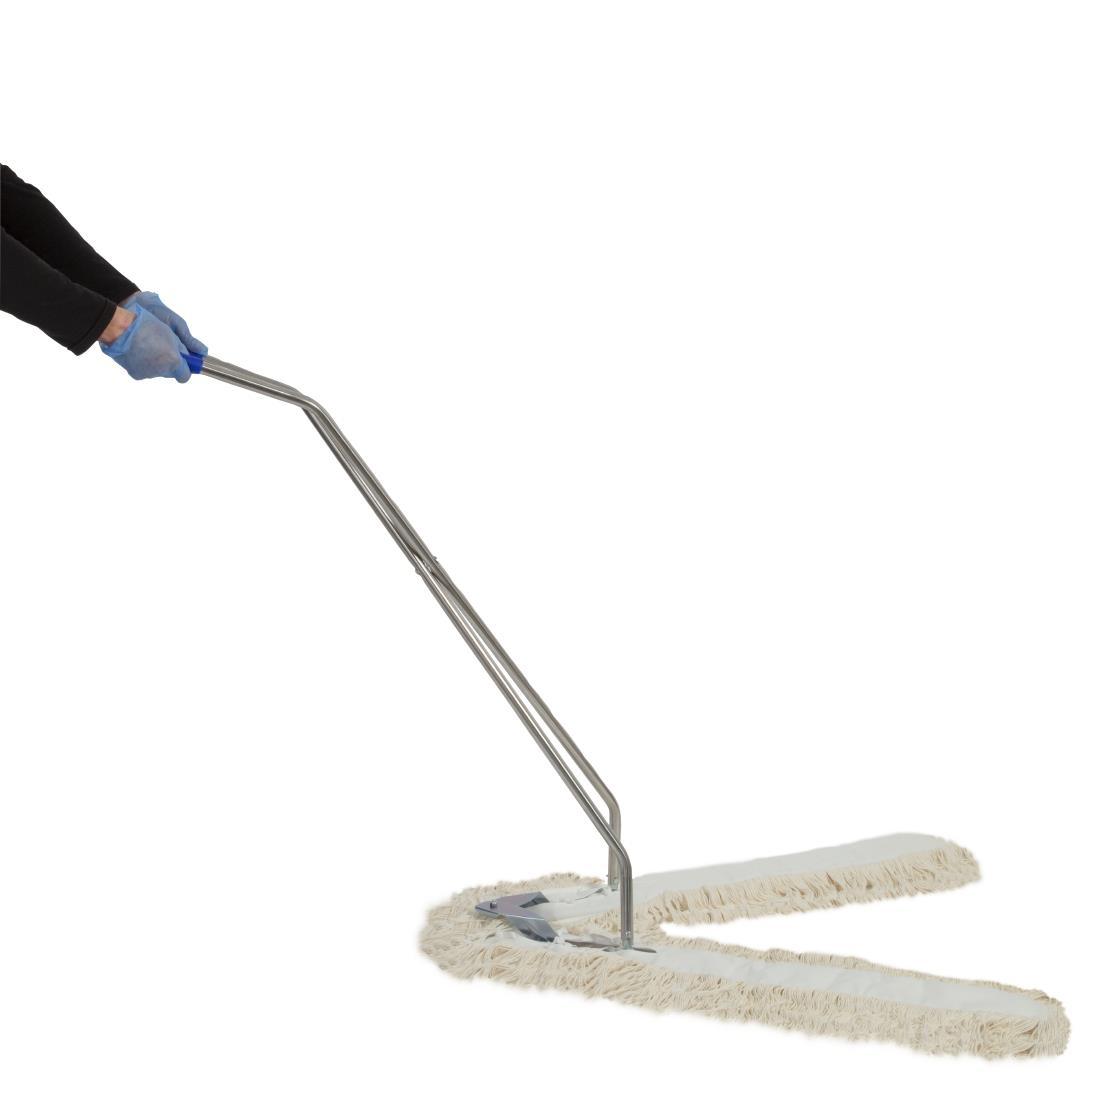 V-Sweeper Floor Sweeper - CD803  - 2